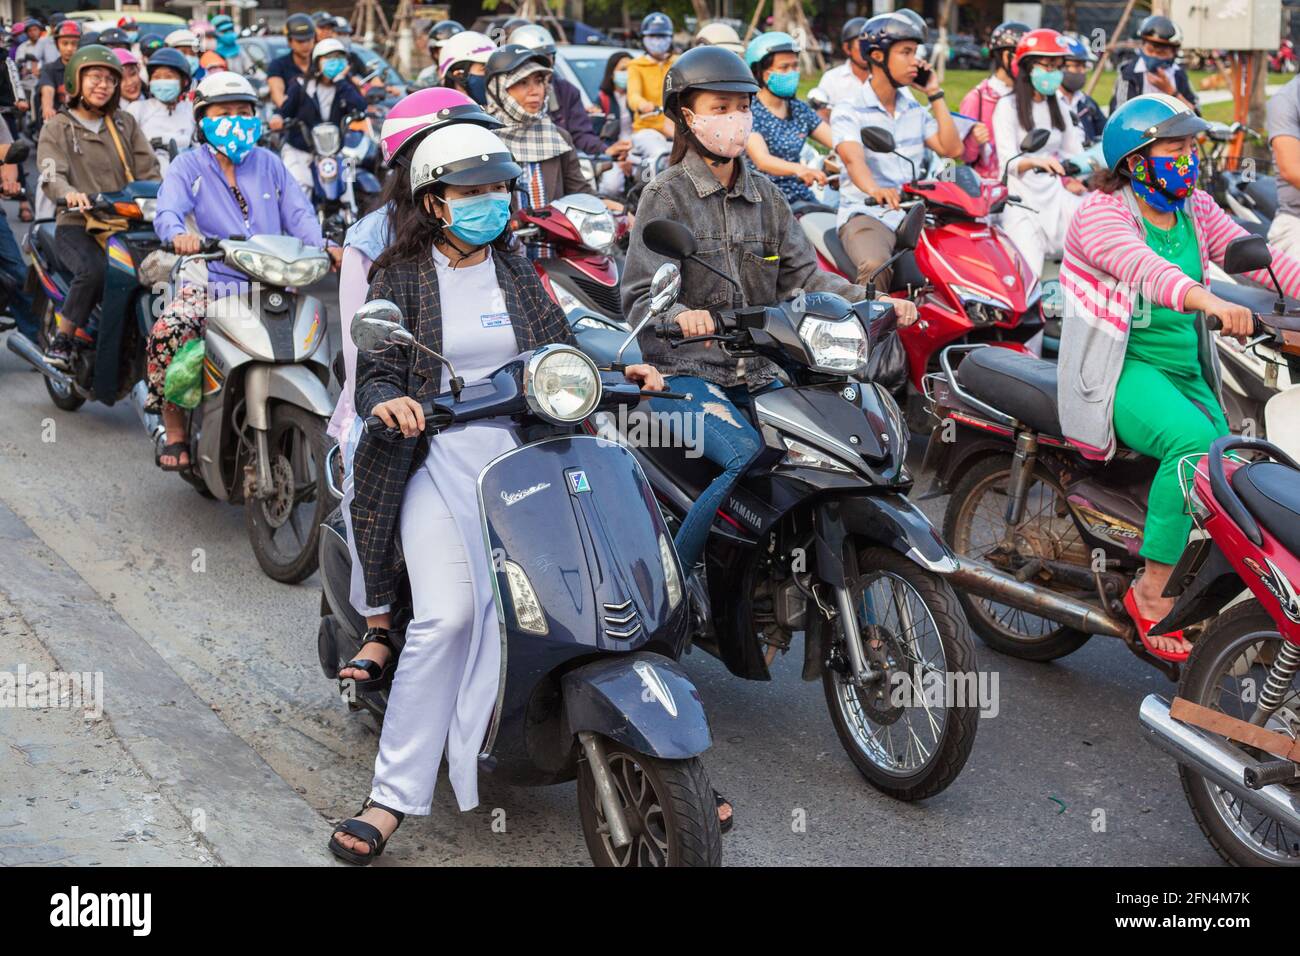 Graziose studentesse vietnamite che indossano abiti tradizionali bianchi ao dai siedono sugli scooter alla giunzione in attesa di luci da cambiare, da Nang, Vietnam Foto Stock